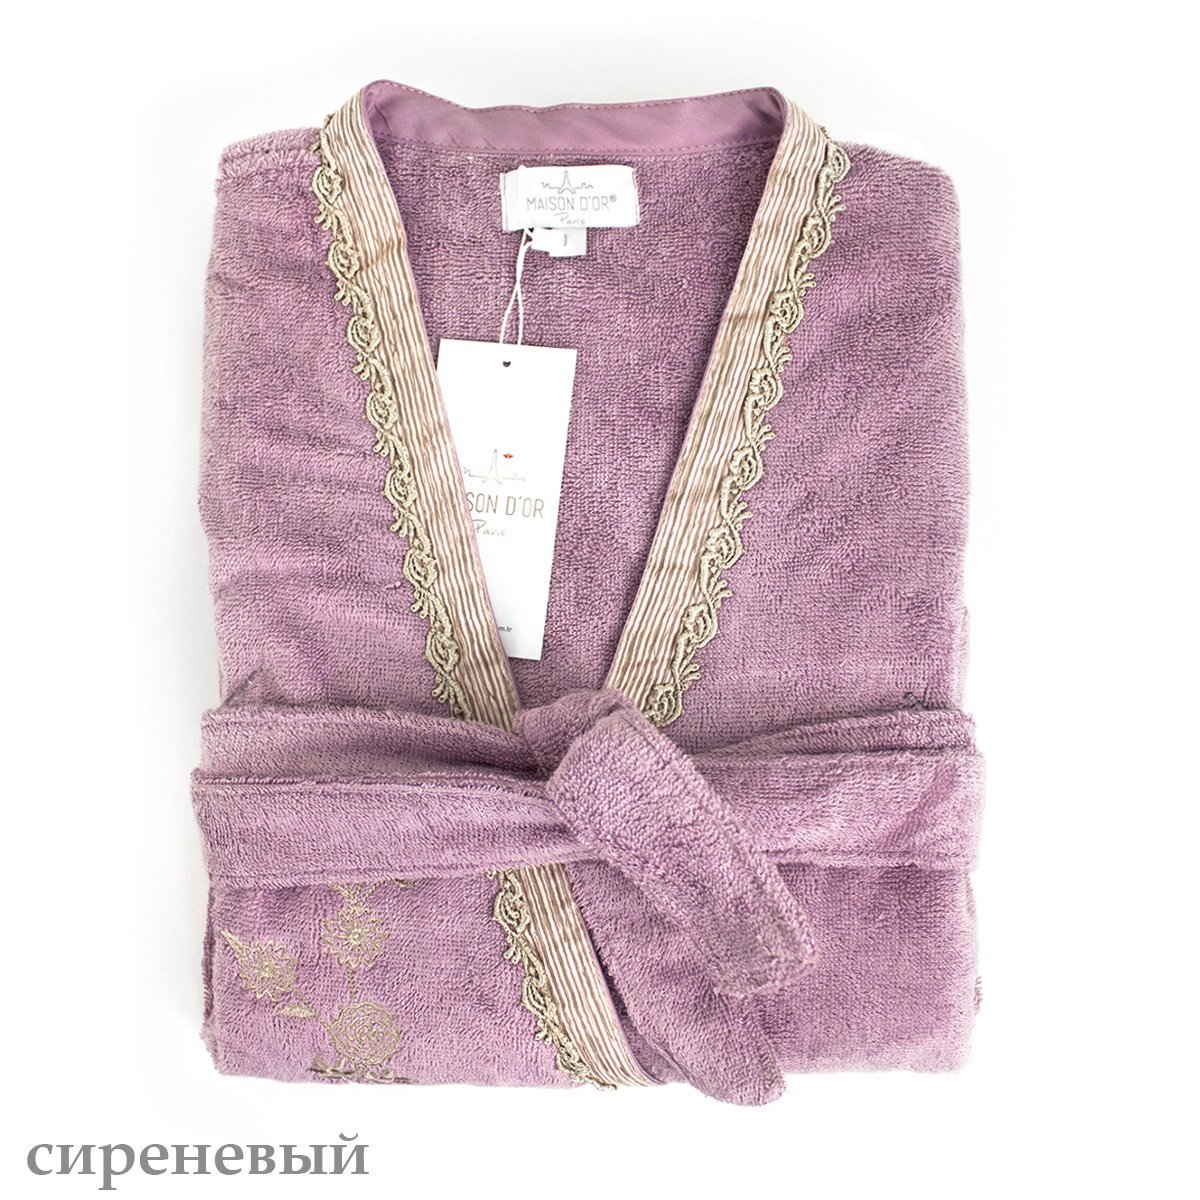 Банный халат Sidney цвет: фиолетовый (L)